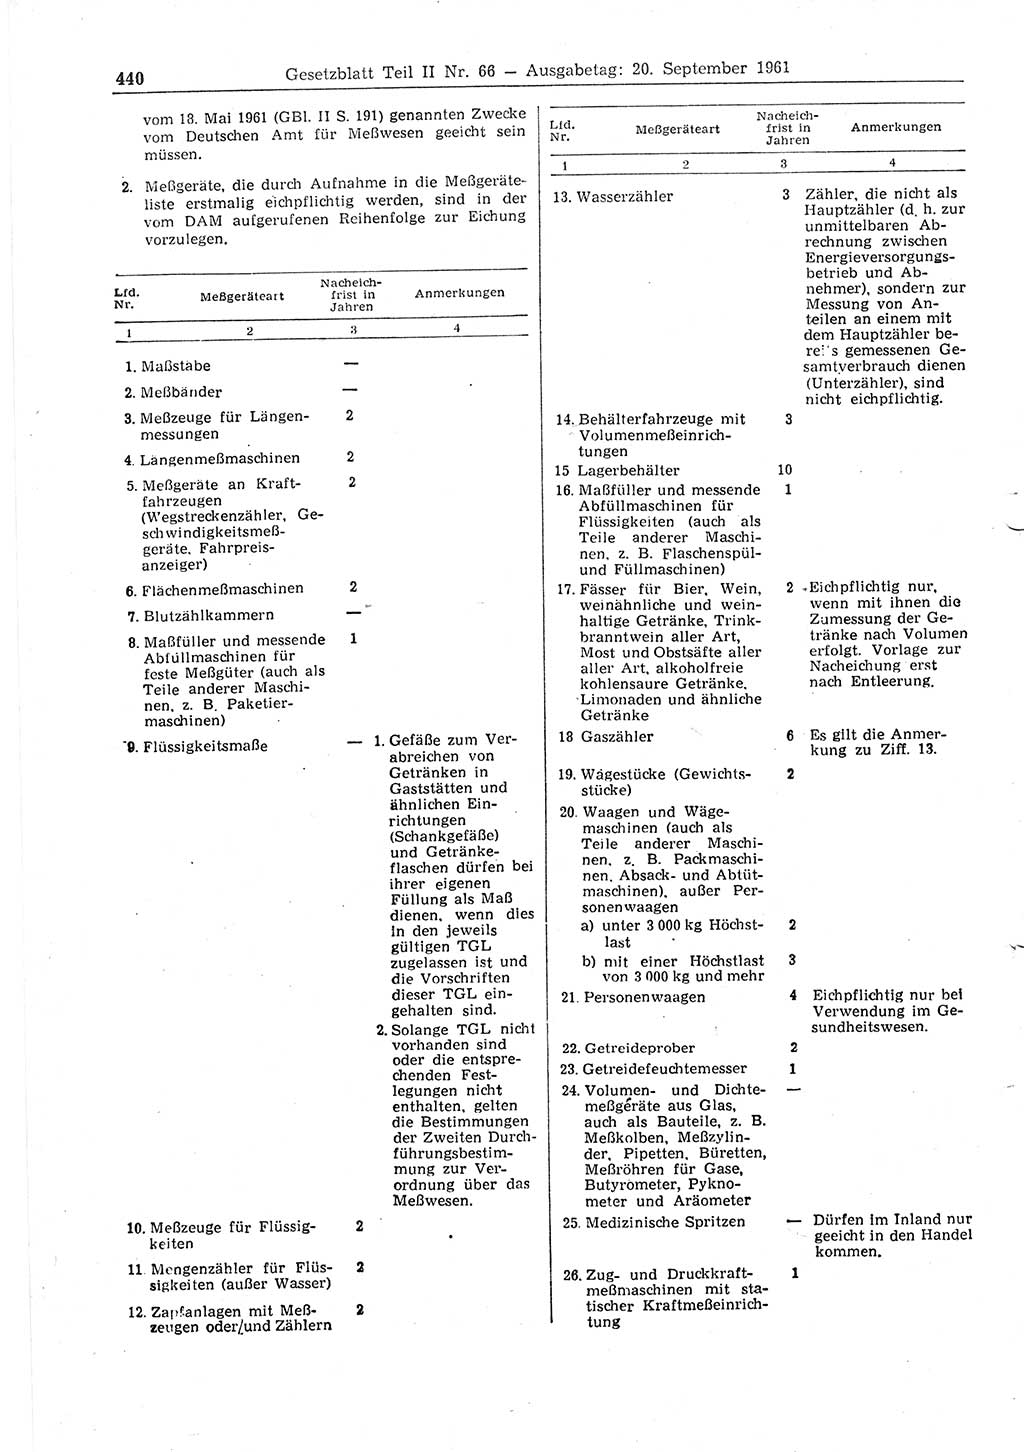 Gesetzblatt (GBl.) der Deutschen Demokratischen Republik (DDR) Teil ⅠⅠ 1961, Seite 440 (GBl. DDR ⅠⅠ 1961, S. 440)